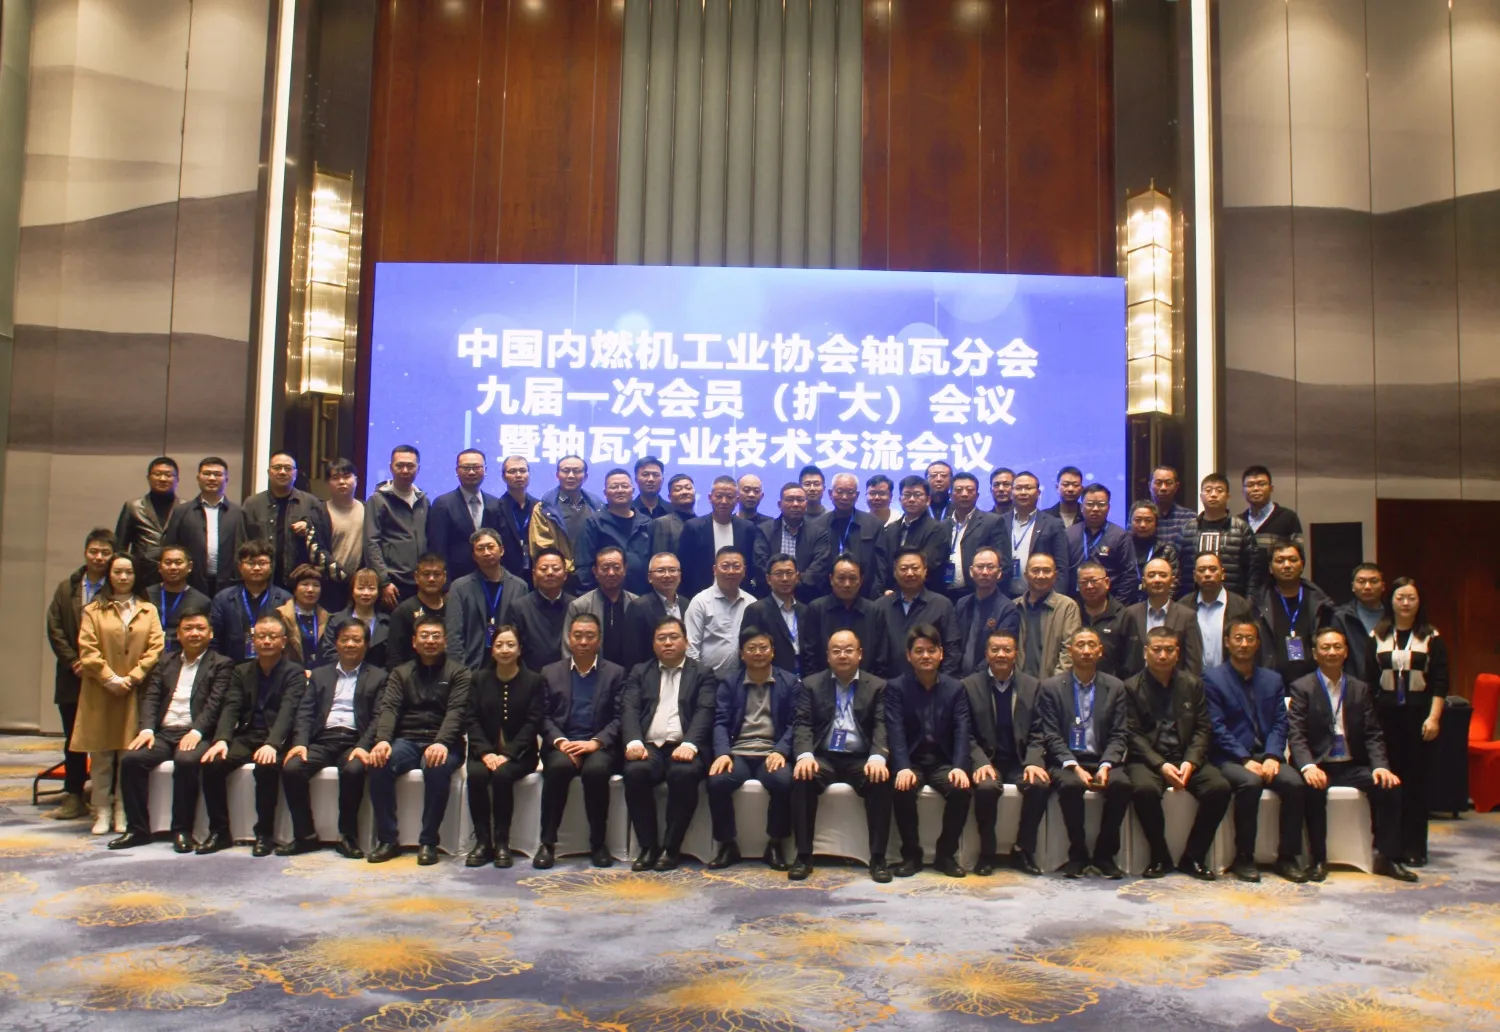 انعقد الاجتماع التاسع (الموسع) للأعضاء للدورة التاسعة لجمعية صناعة آلات الحرق الداخلي الصينية في آنهوي